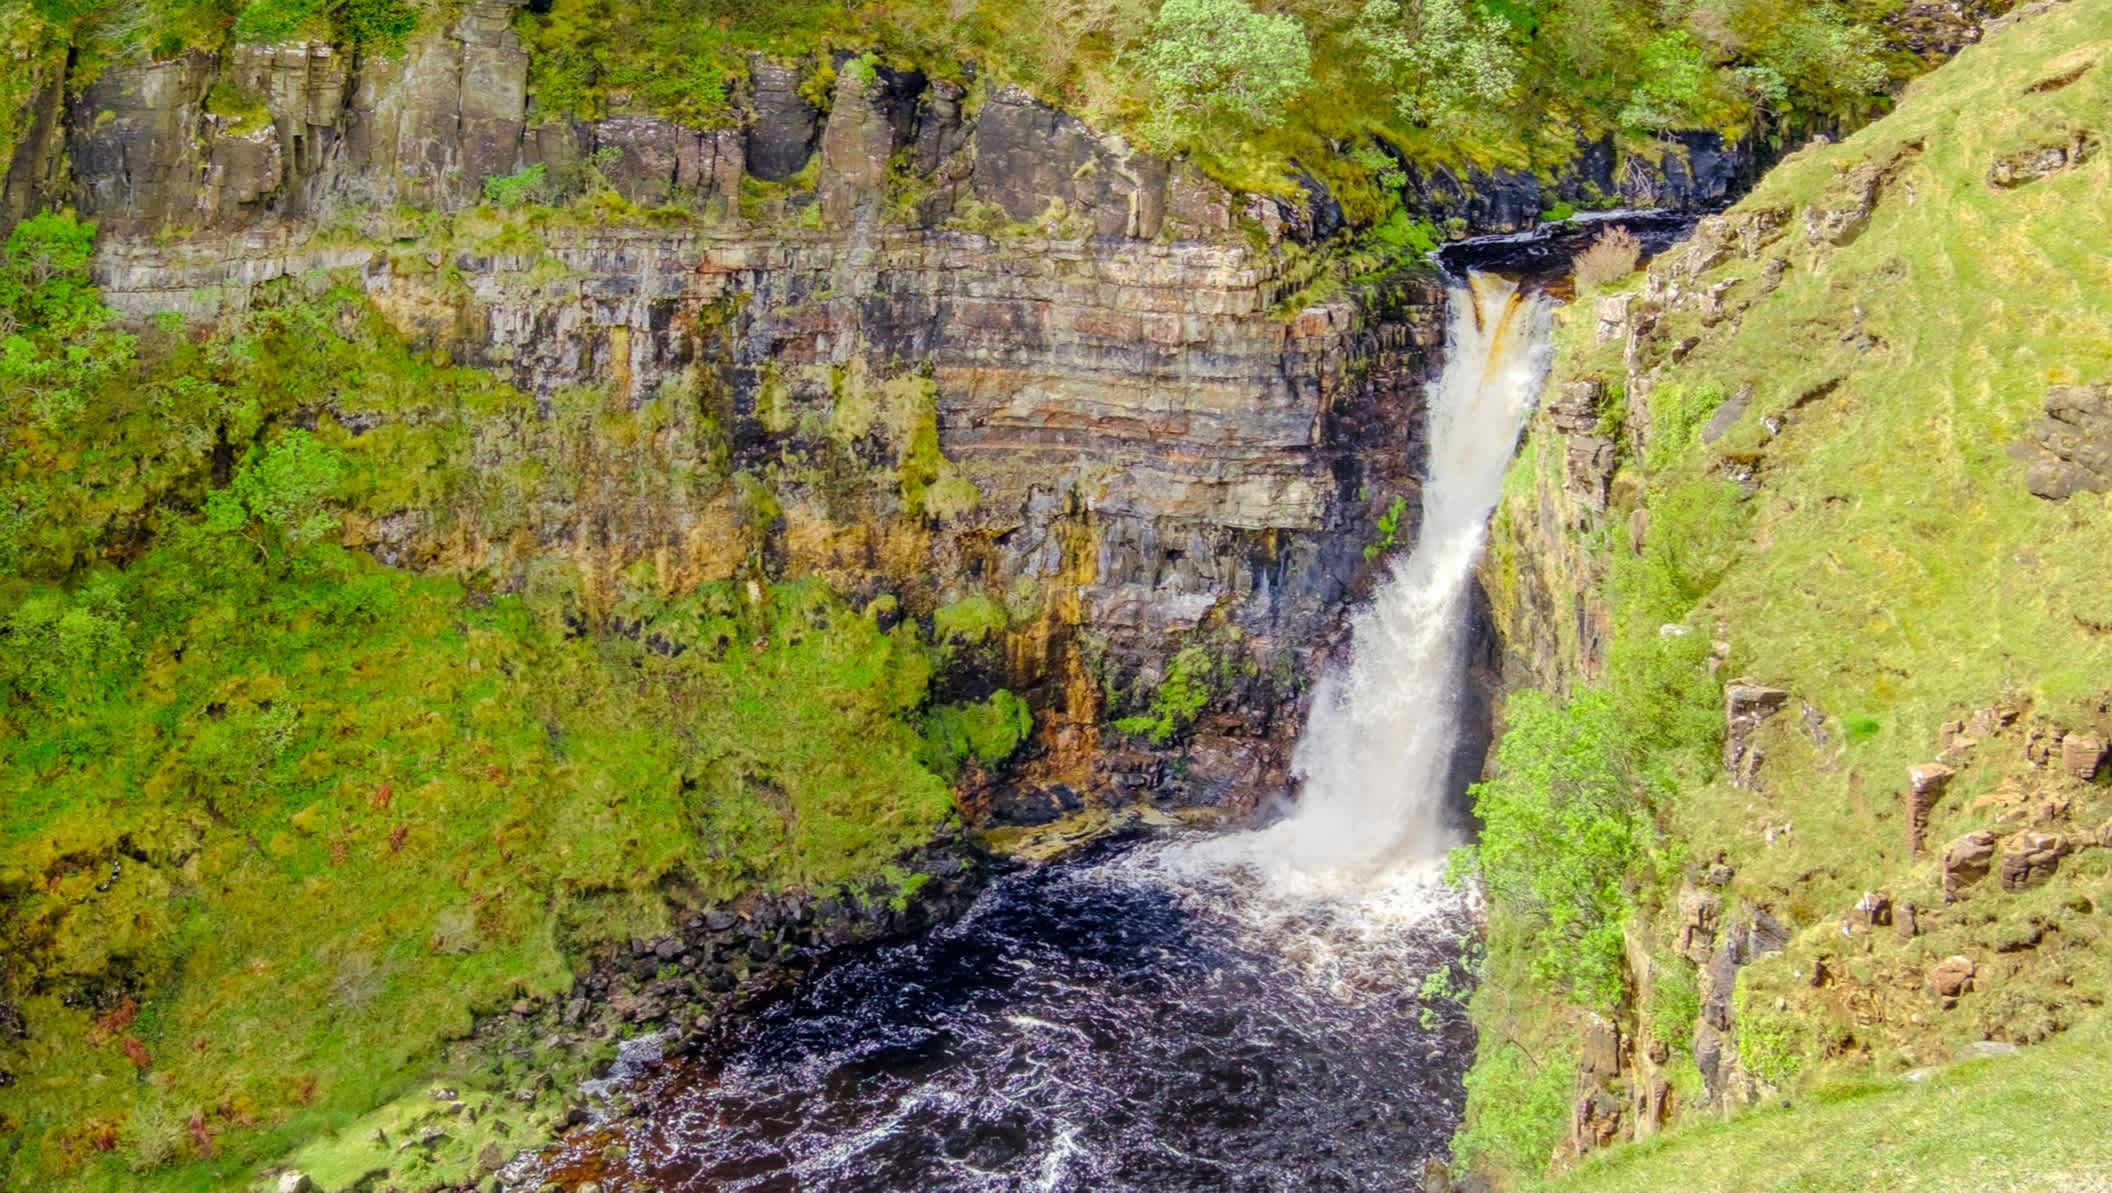 Blick auf den Lealt Wasserfall auf der Isle of Skye, Schottland

